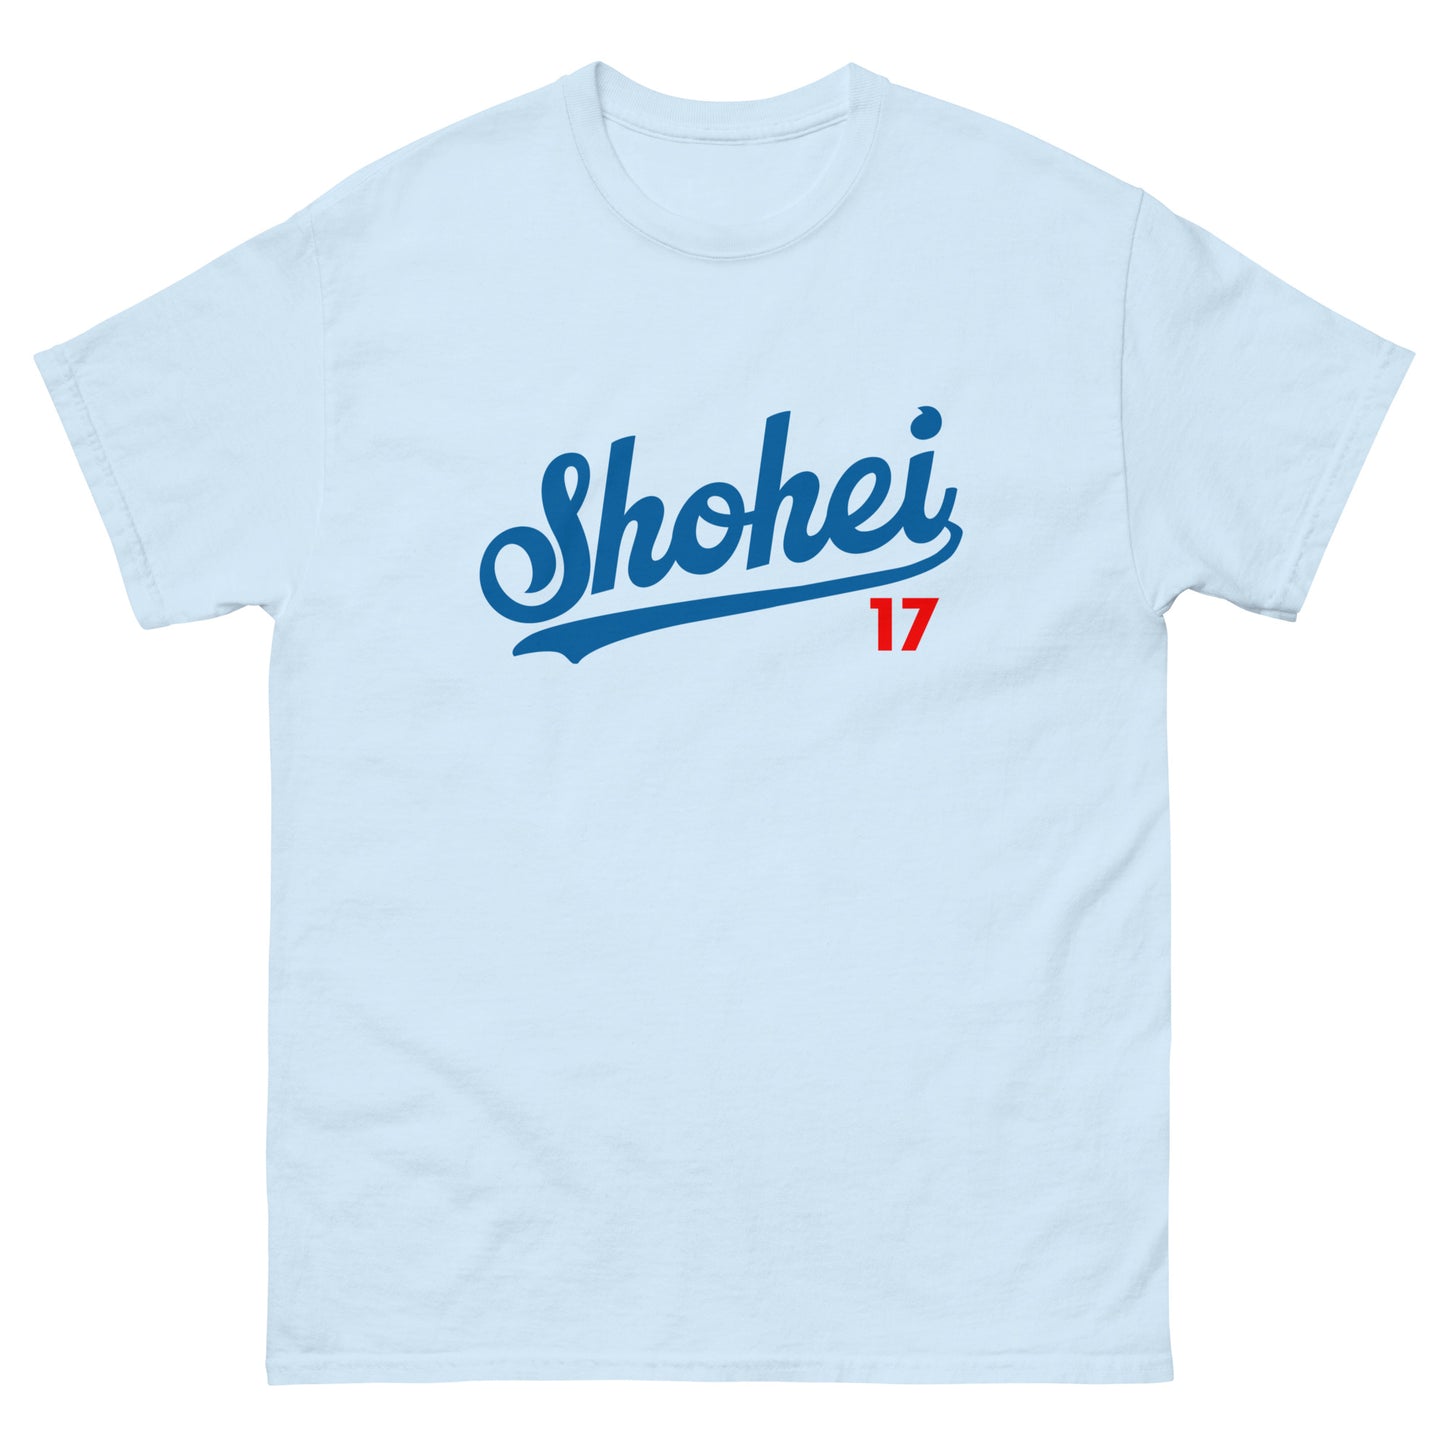 Shohei classic tee